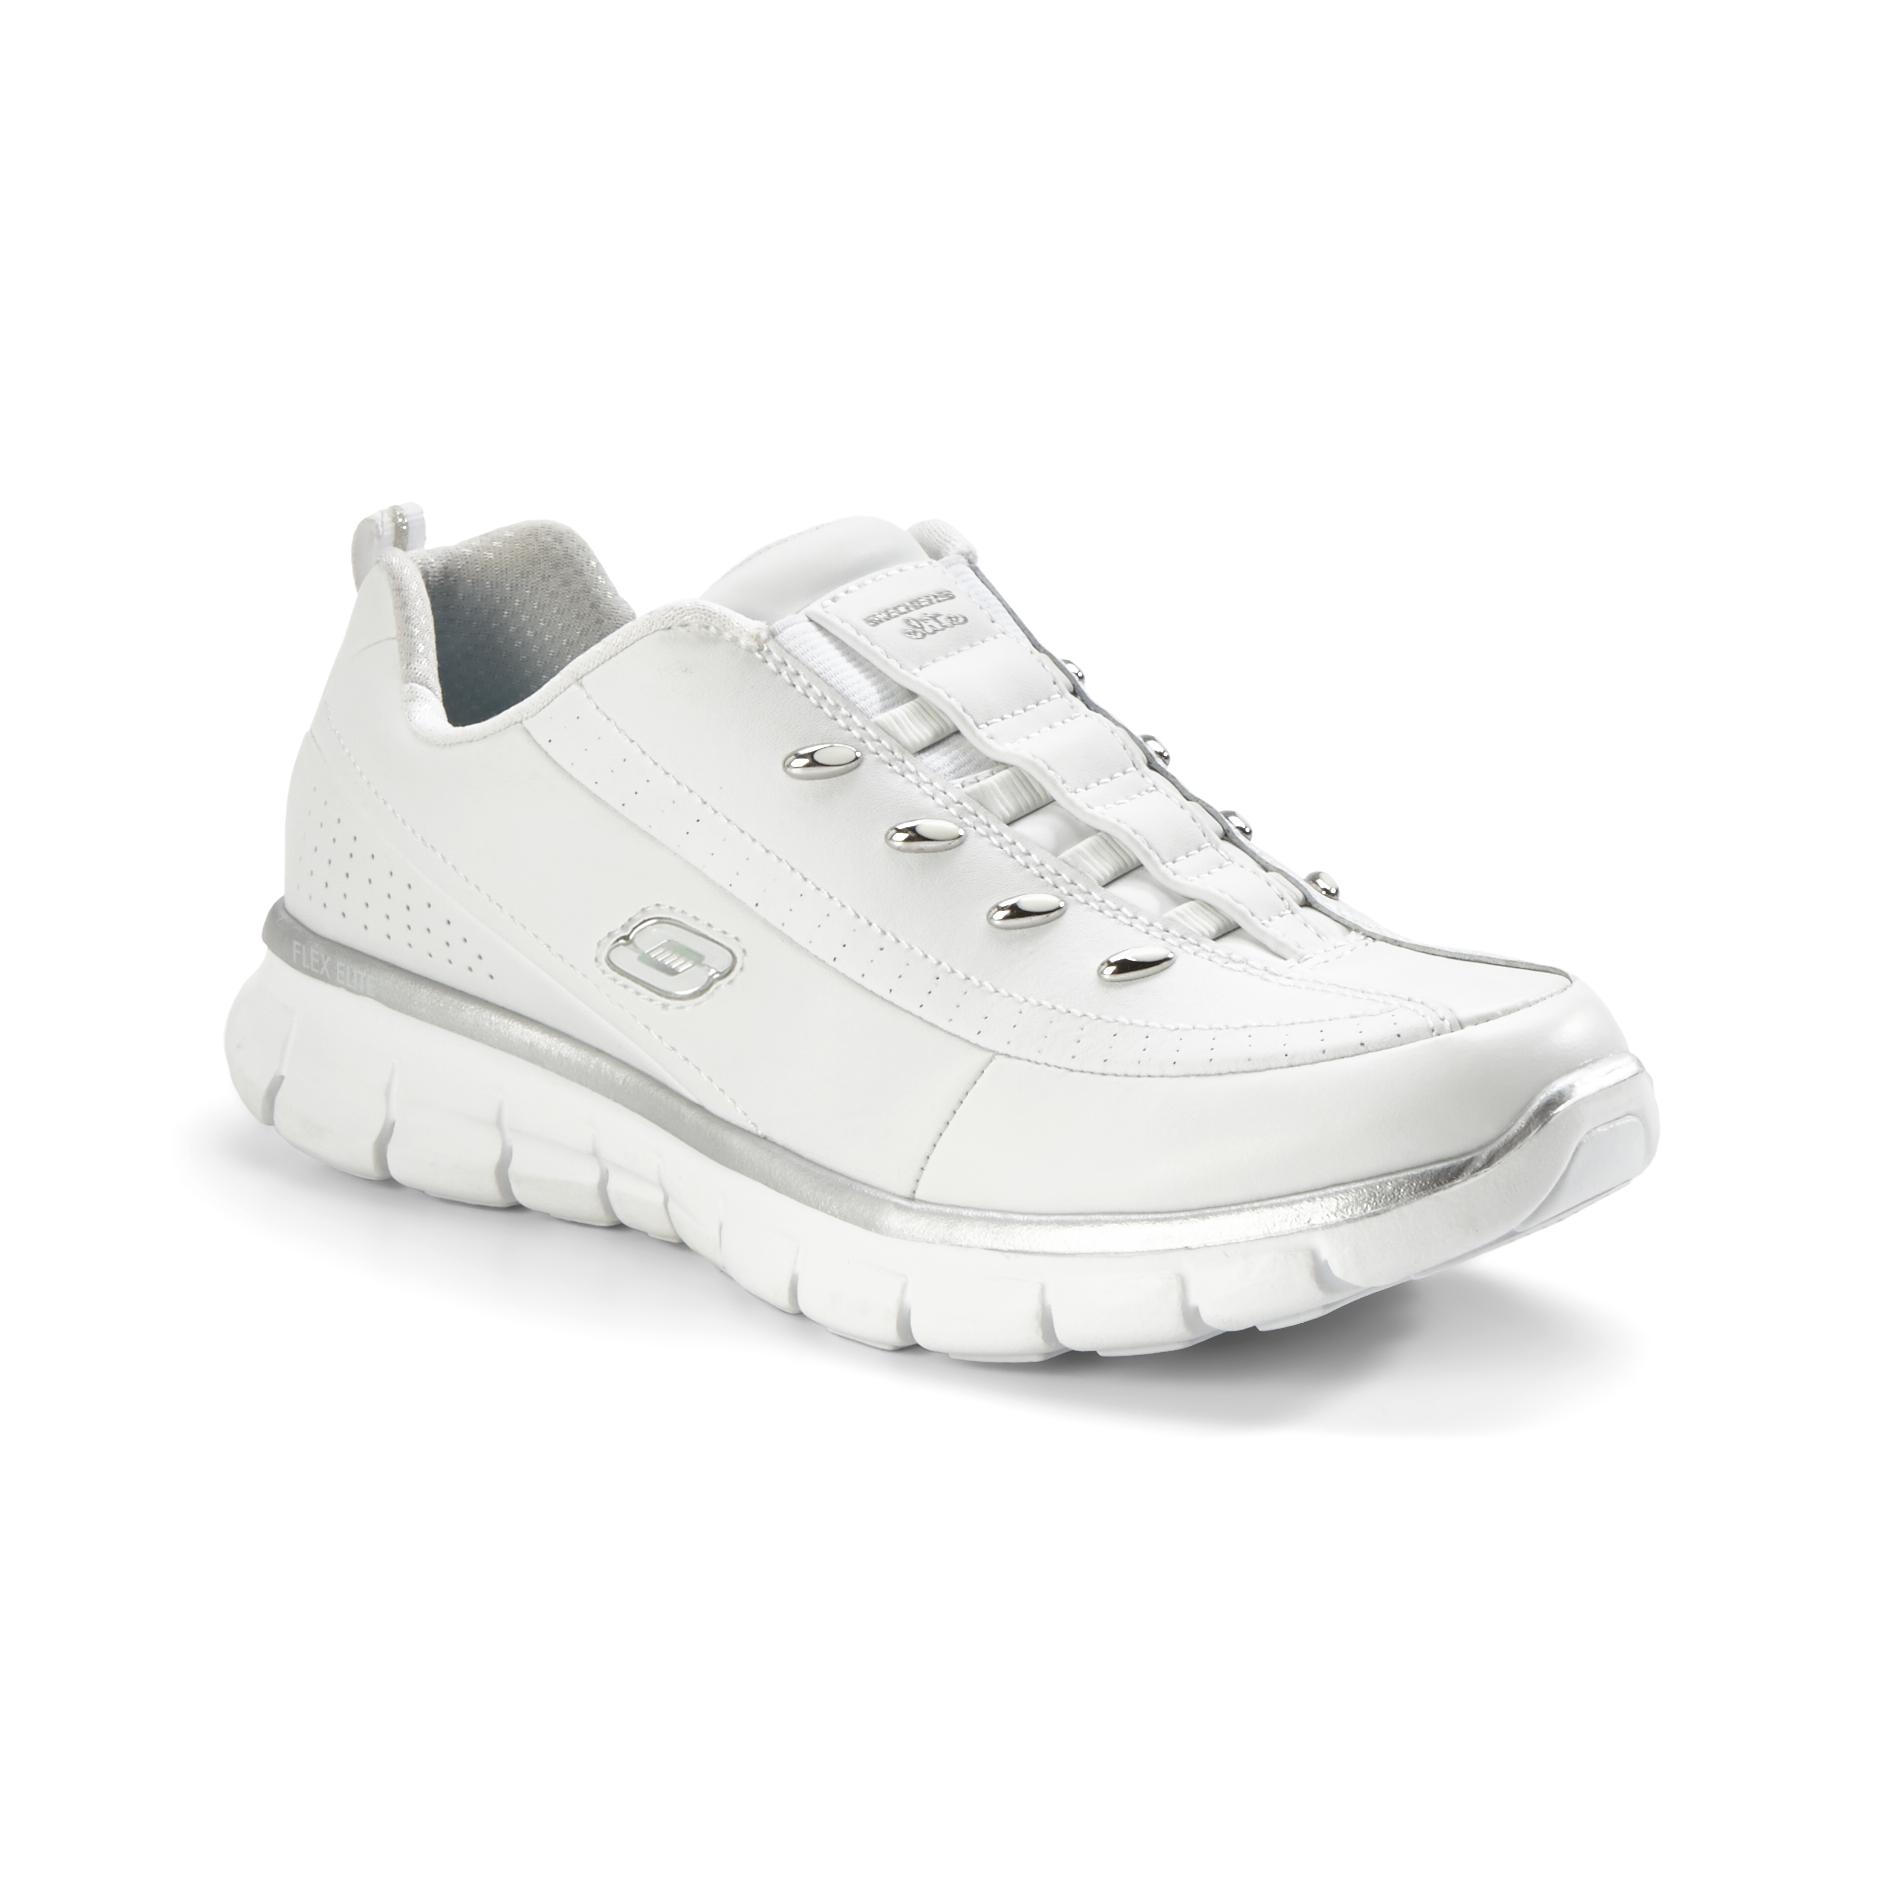 Skechers Women's Elite Class Casual Athletic Shoe - White Wide Width